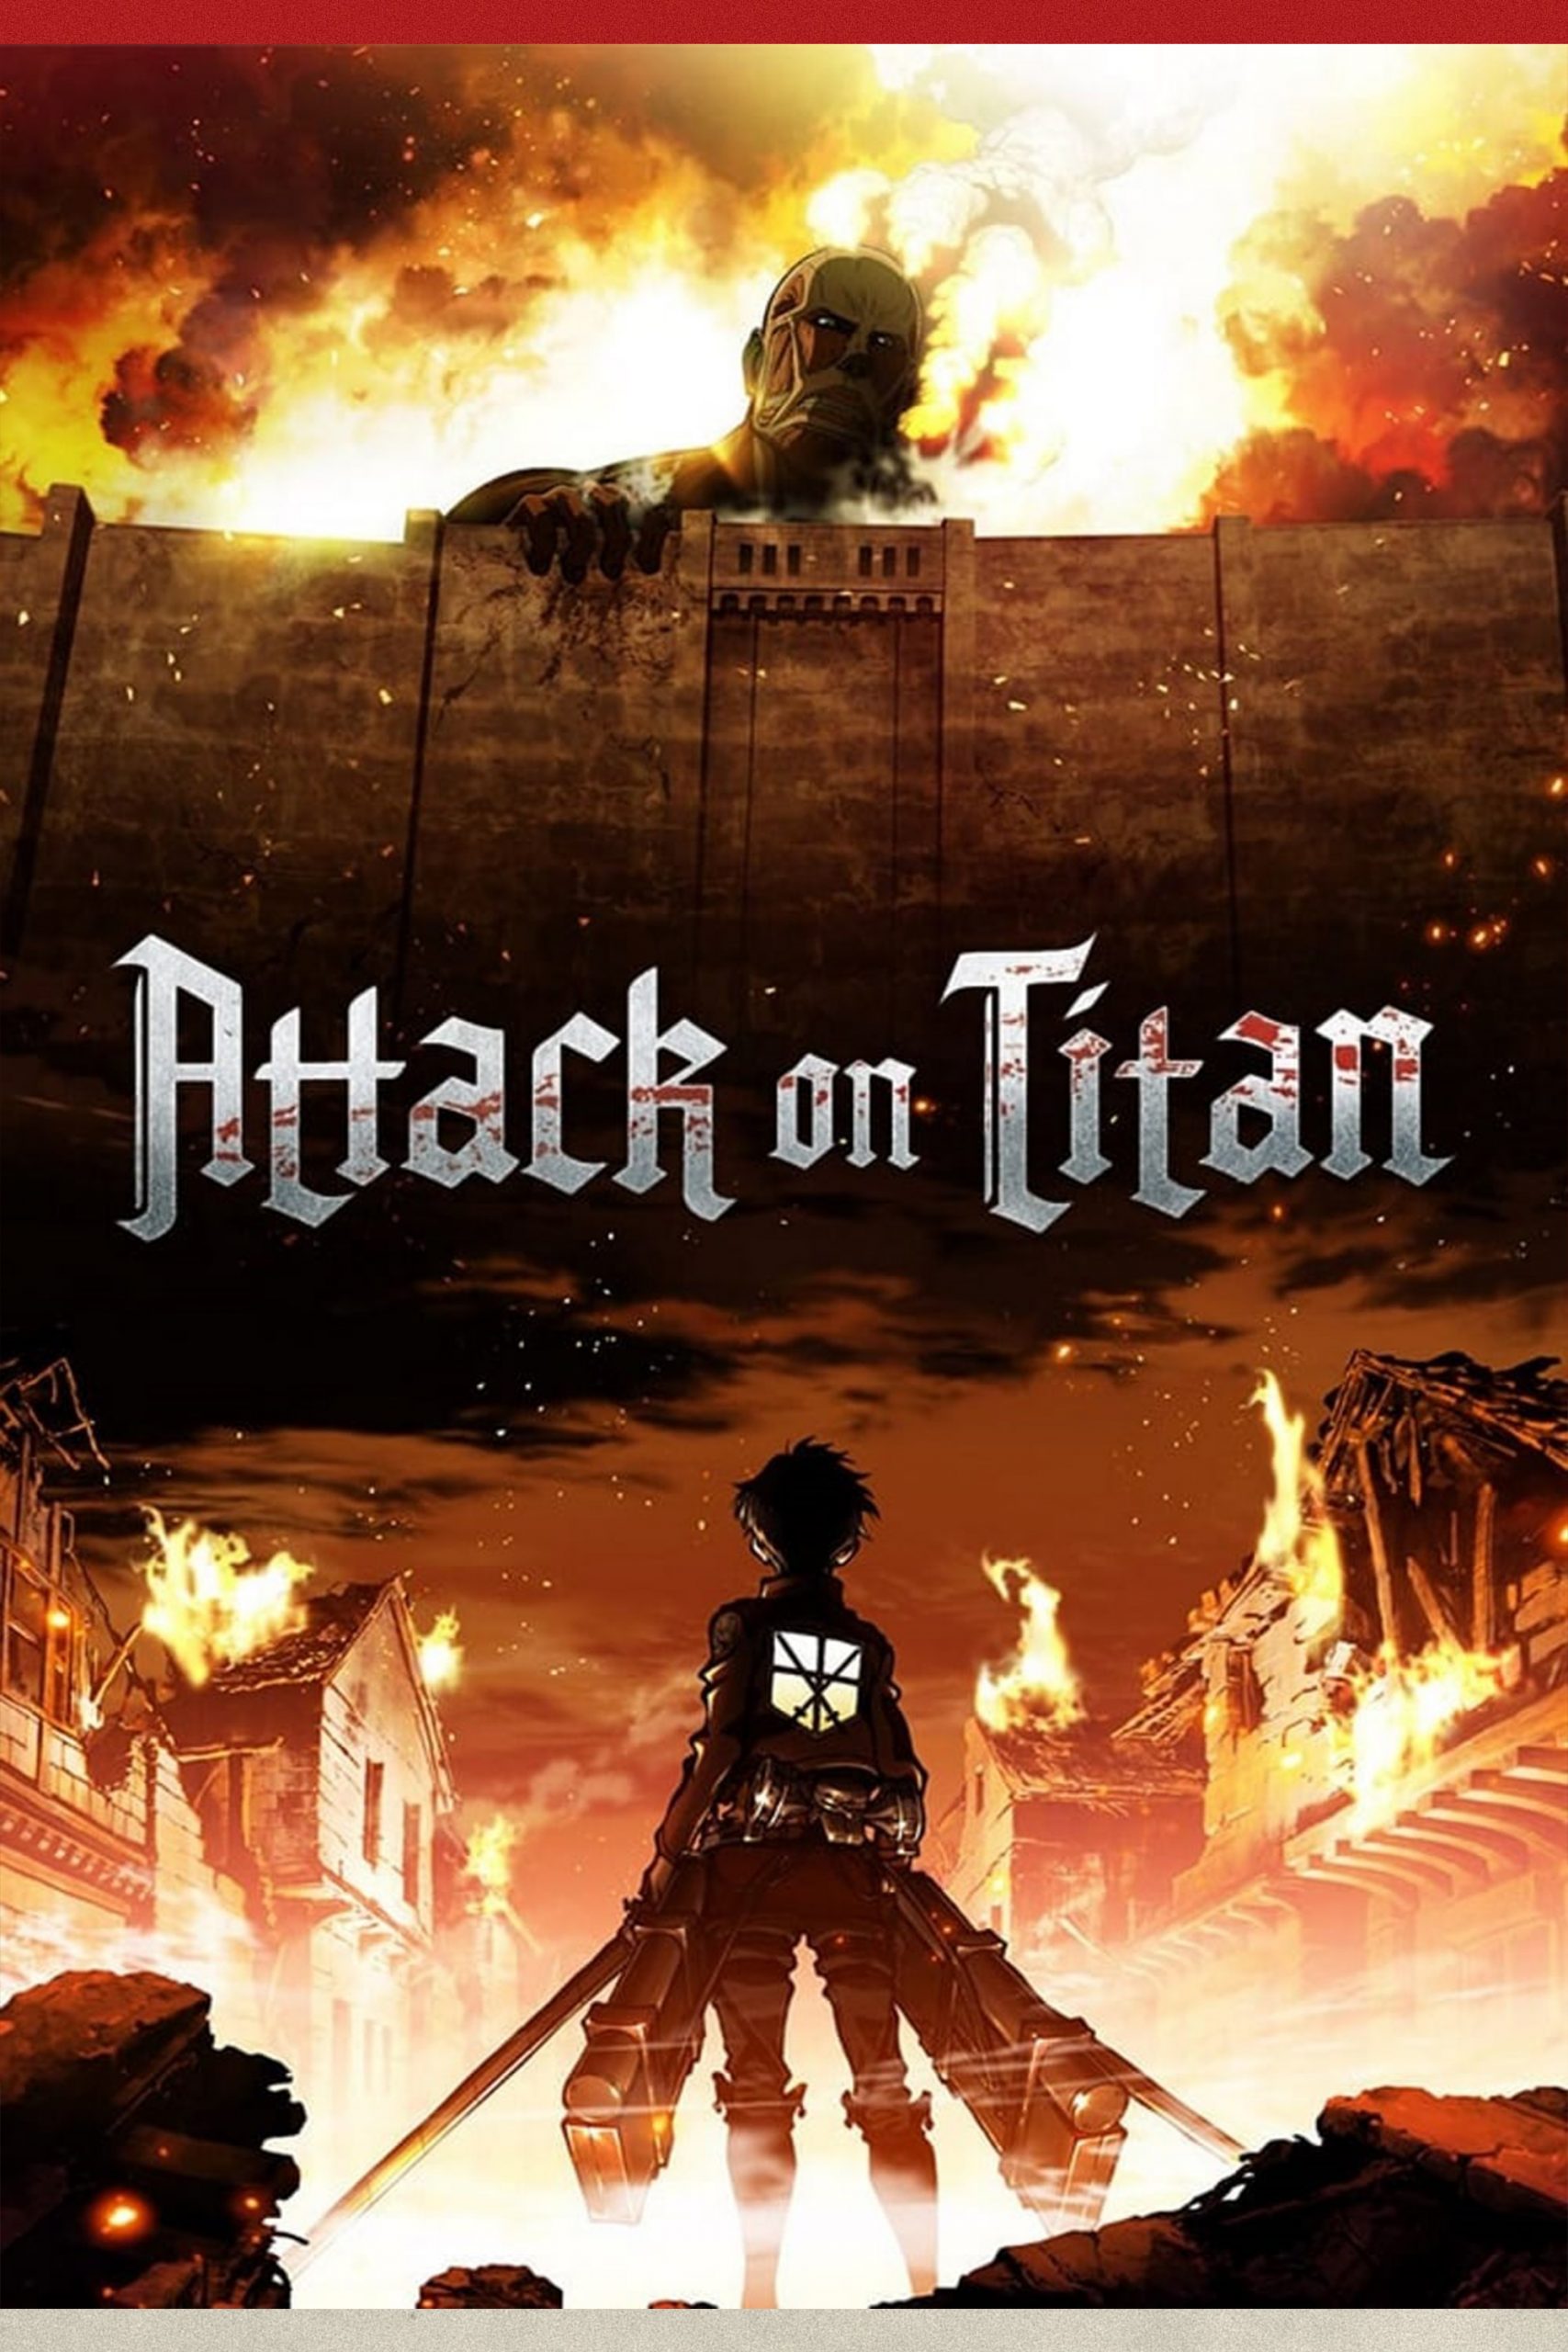 نبرد با تایتان ها – Attack On Titan